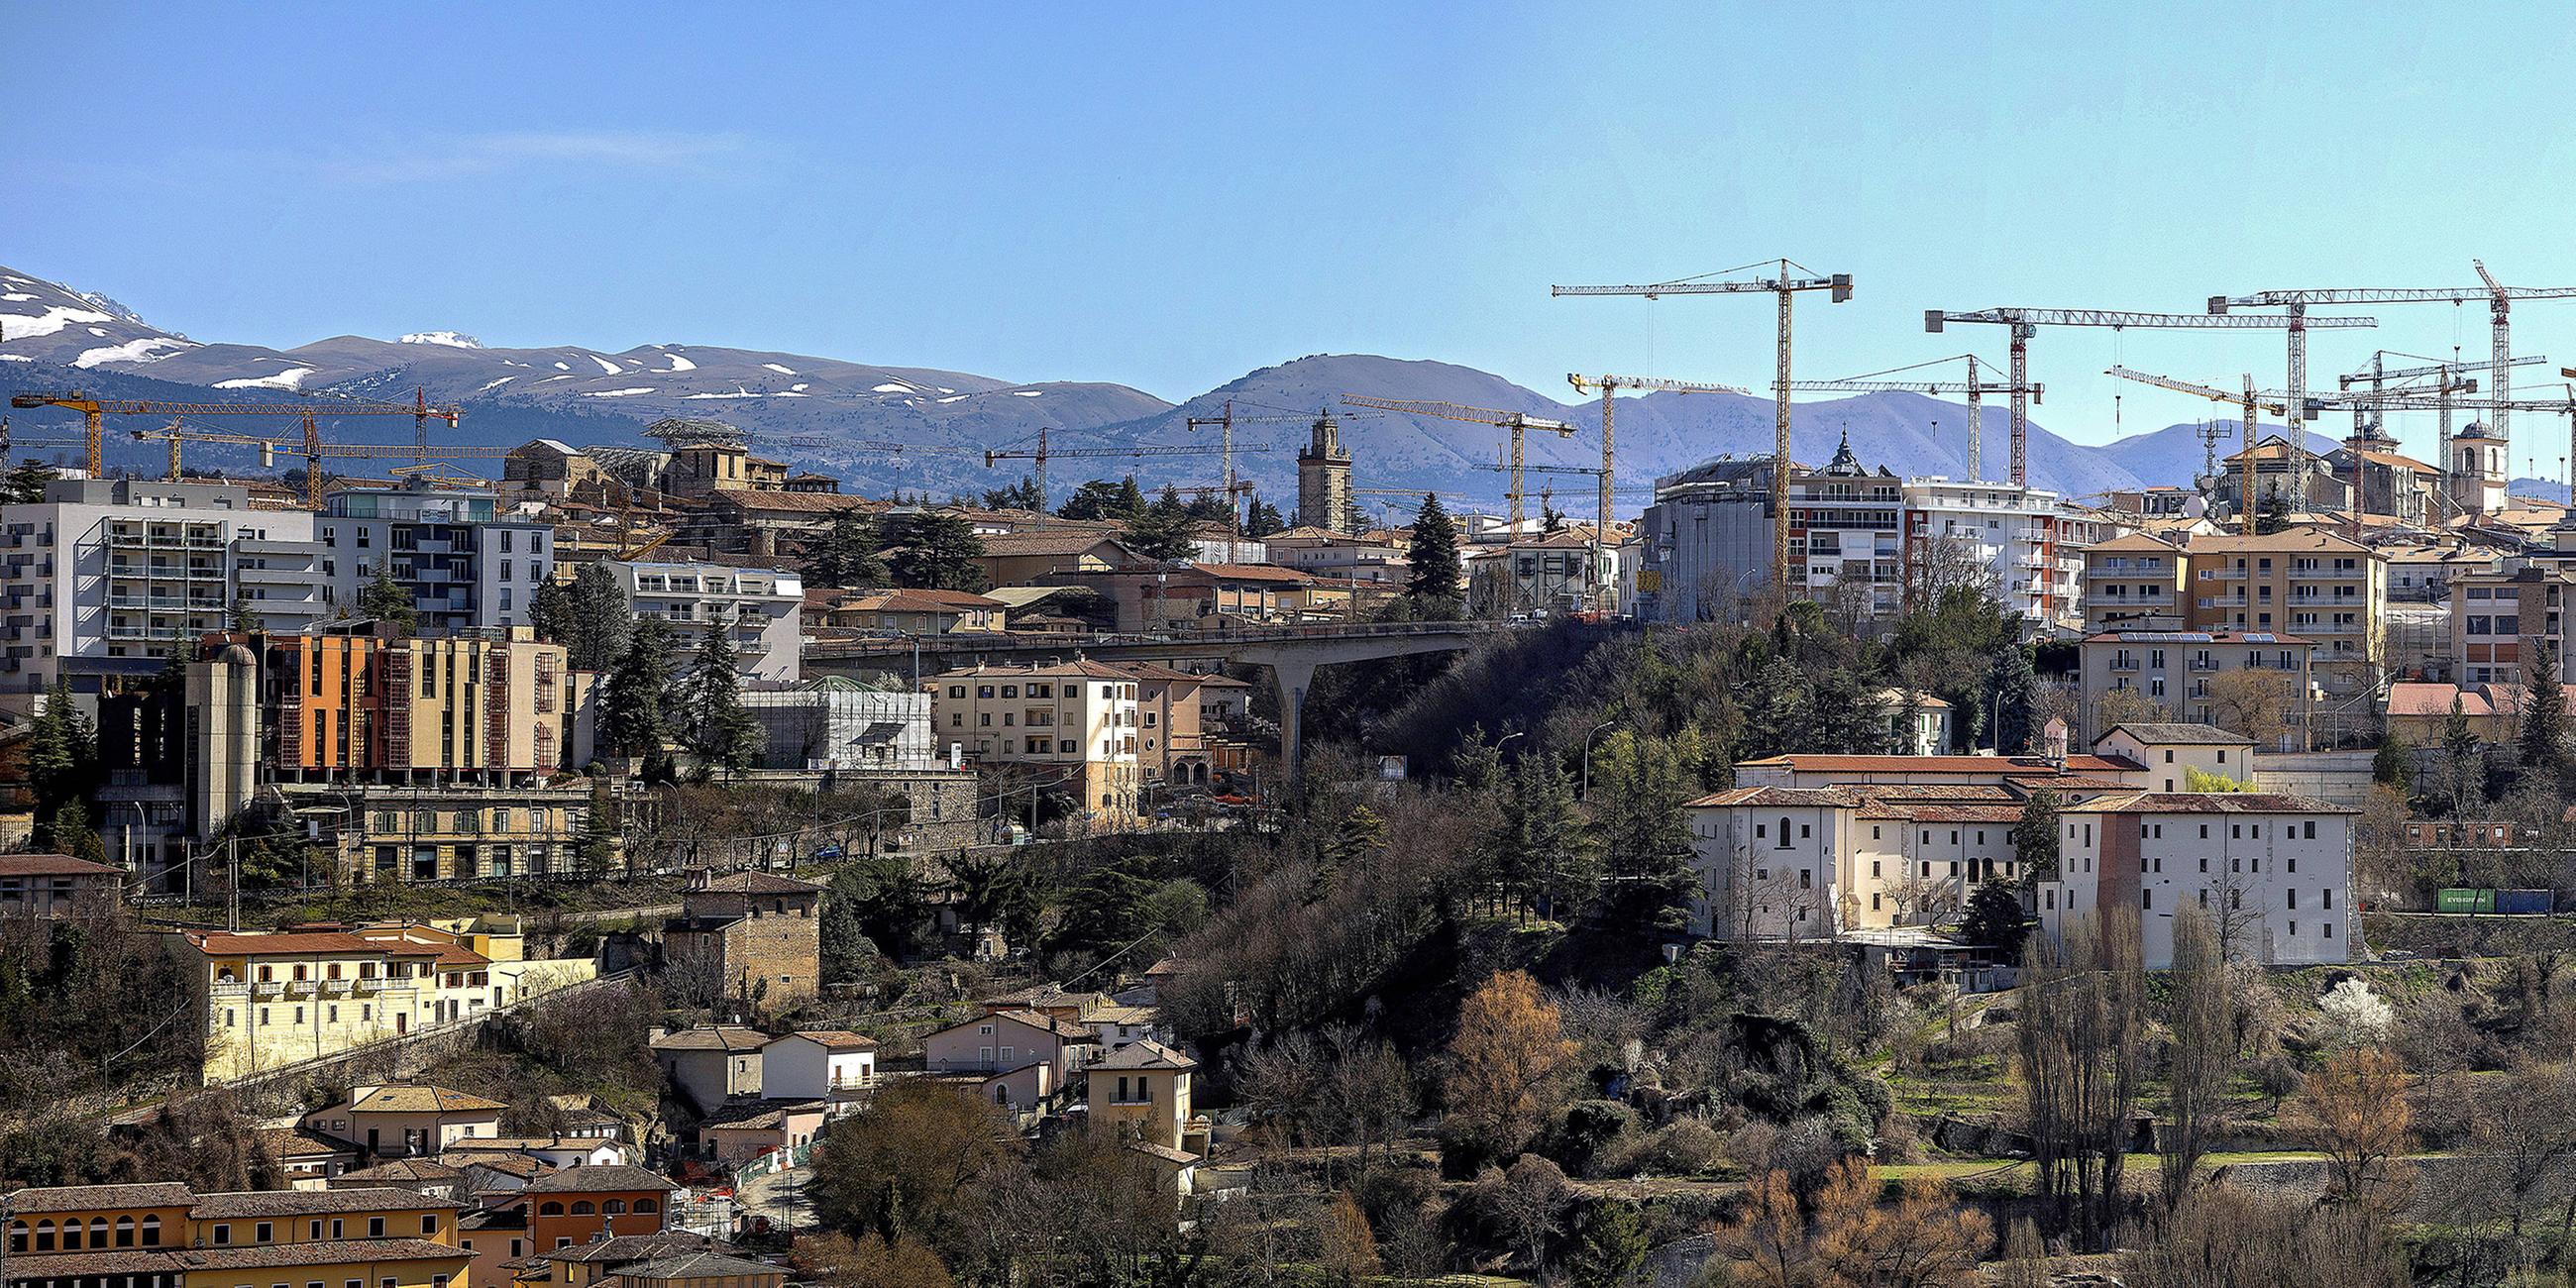 Viele Baukräne säumen den Blick auf die Innenstadt von L'Aquila